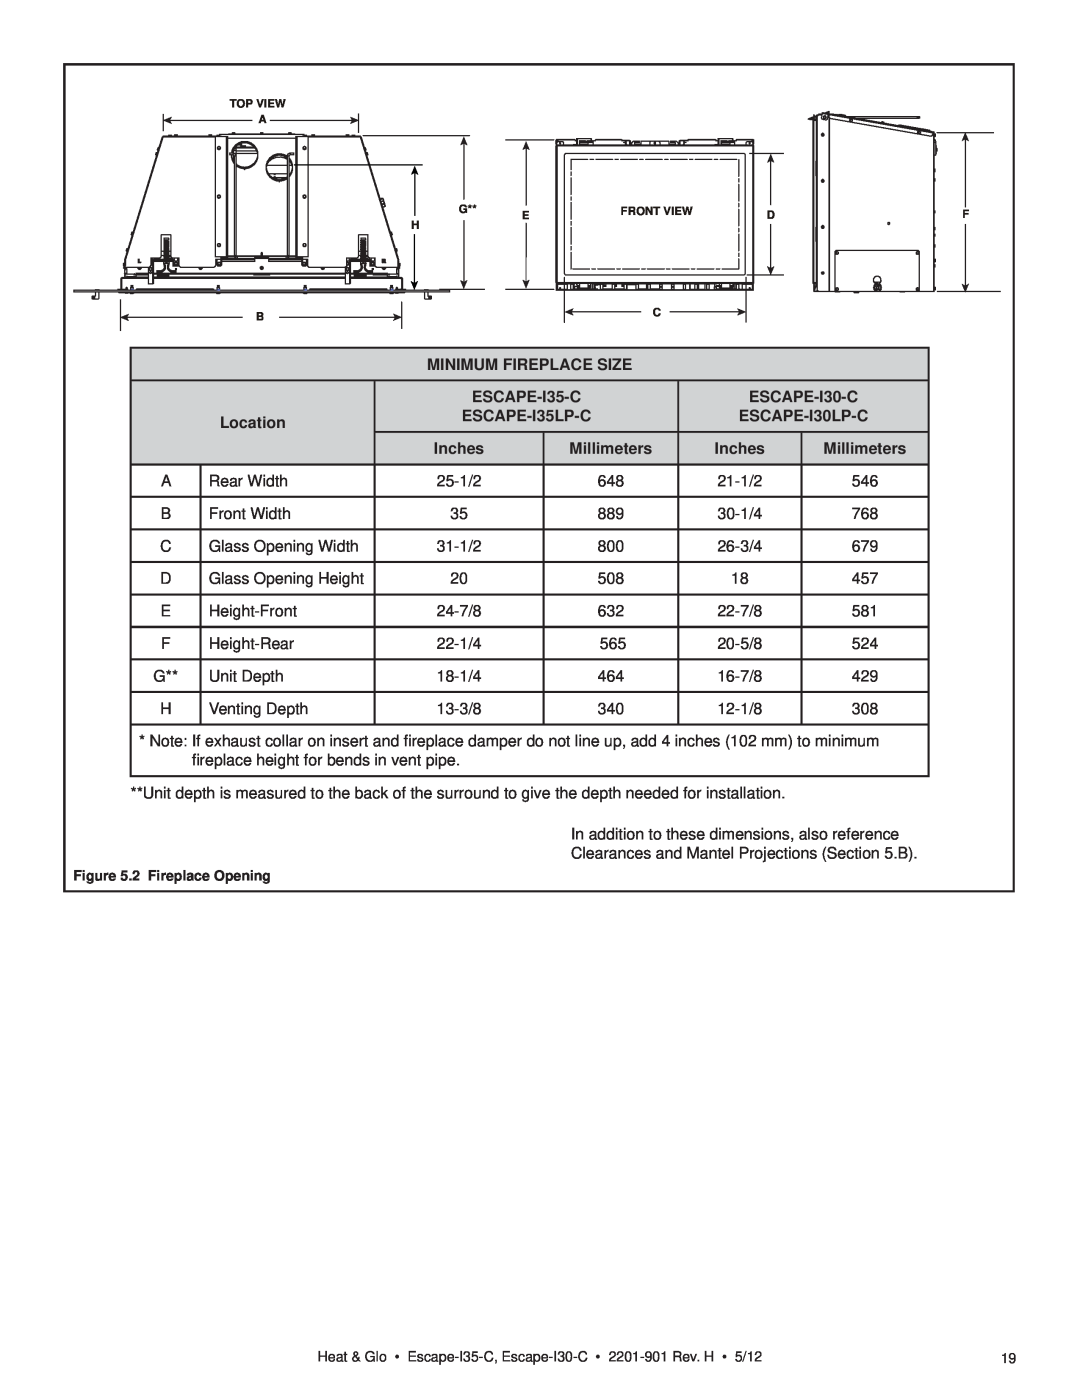 Heat & Glo LifeStyle ESCAPE-I35-C Minimum Fireplace Size, ESCAPE-I30-C, Location, ESCAPE-I35LP-C, ESCAPE-I30LP-C, Inches 